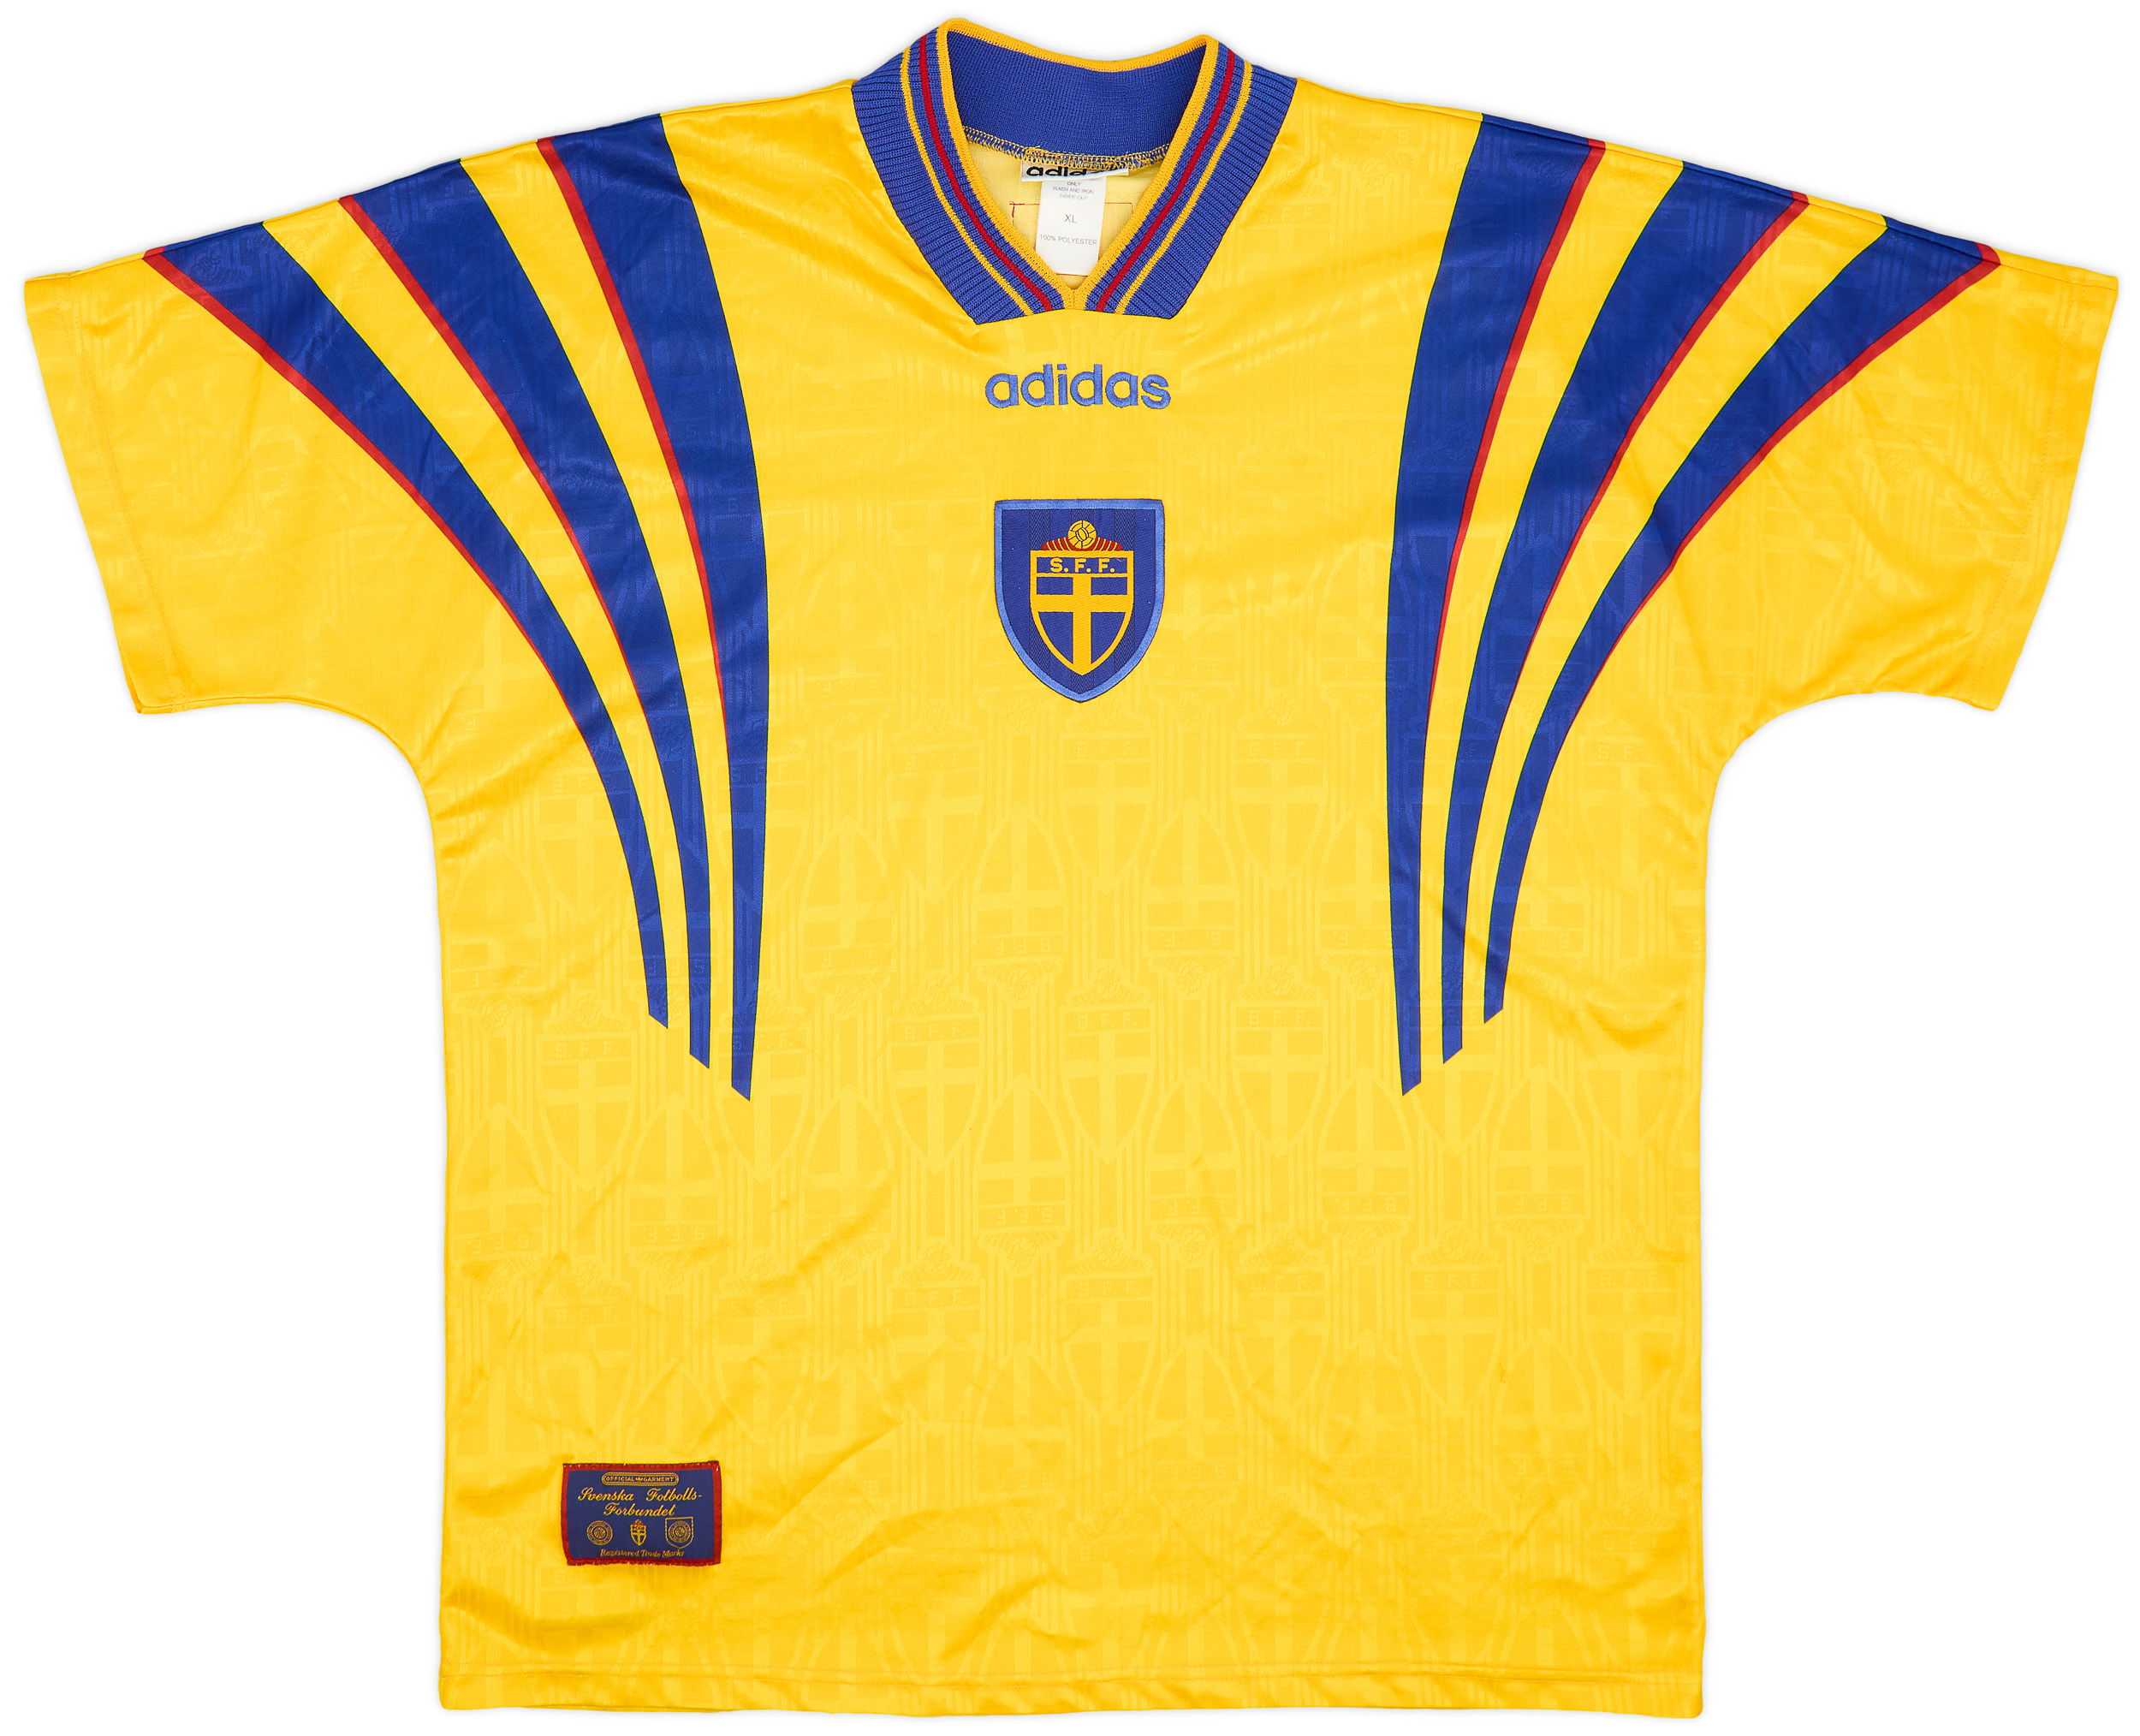 1997 Sweden Home Shirt - 9/10 - ()